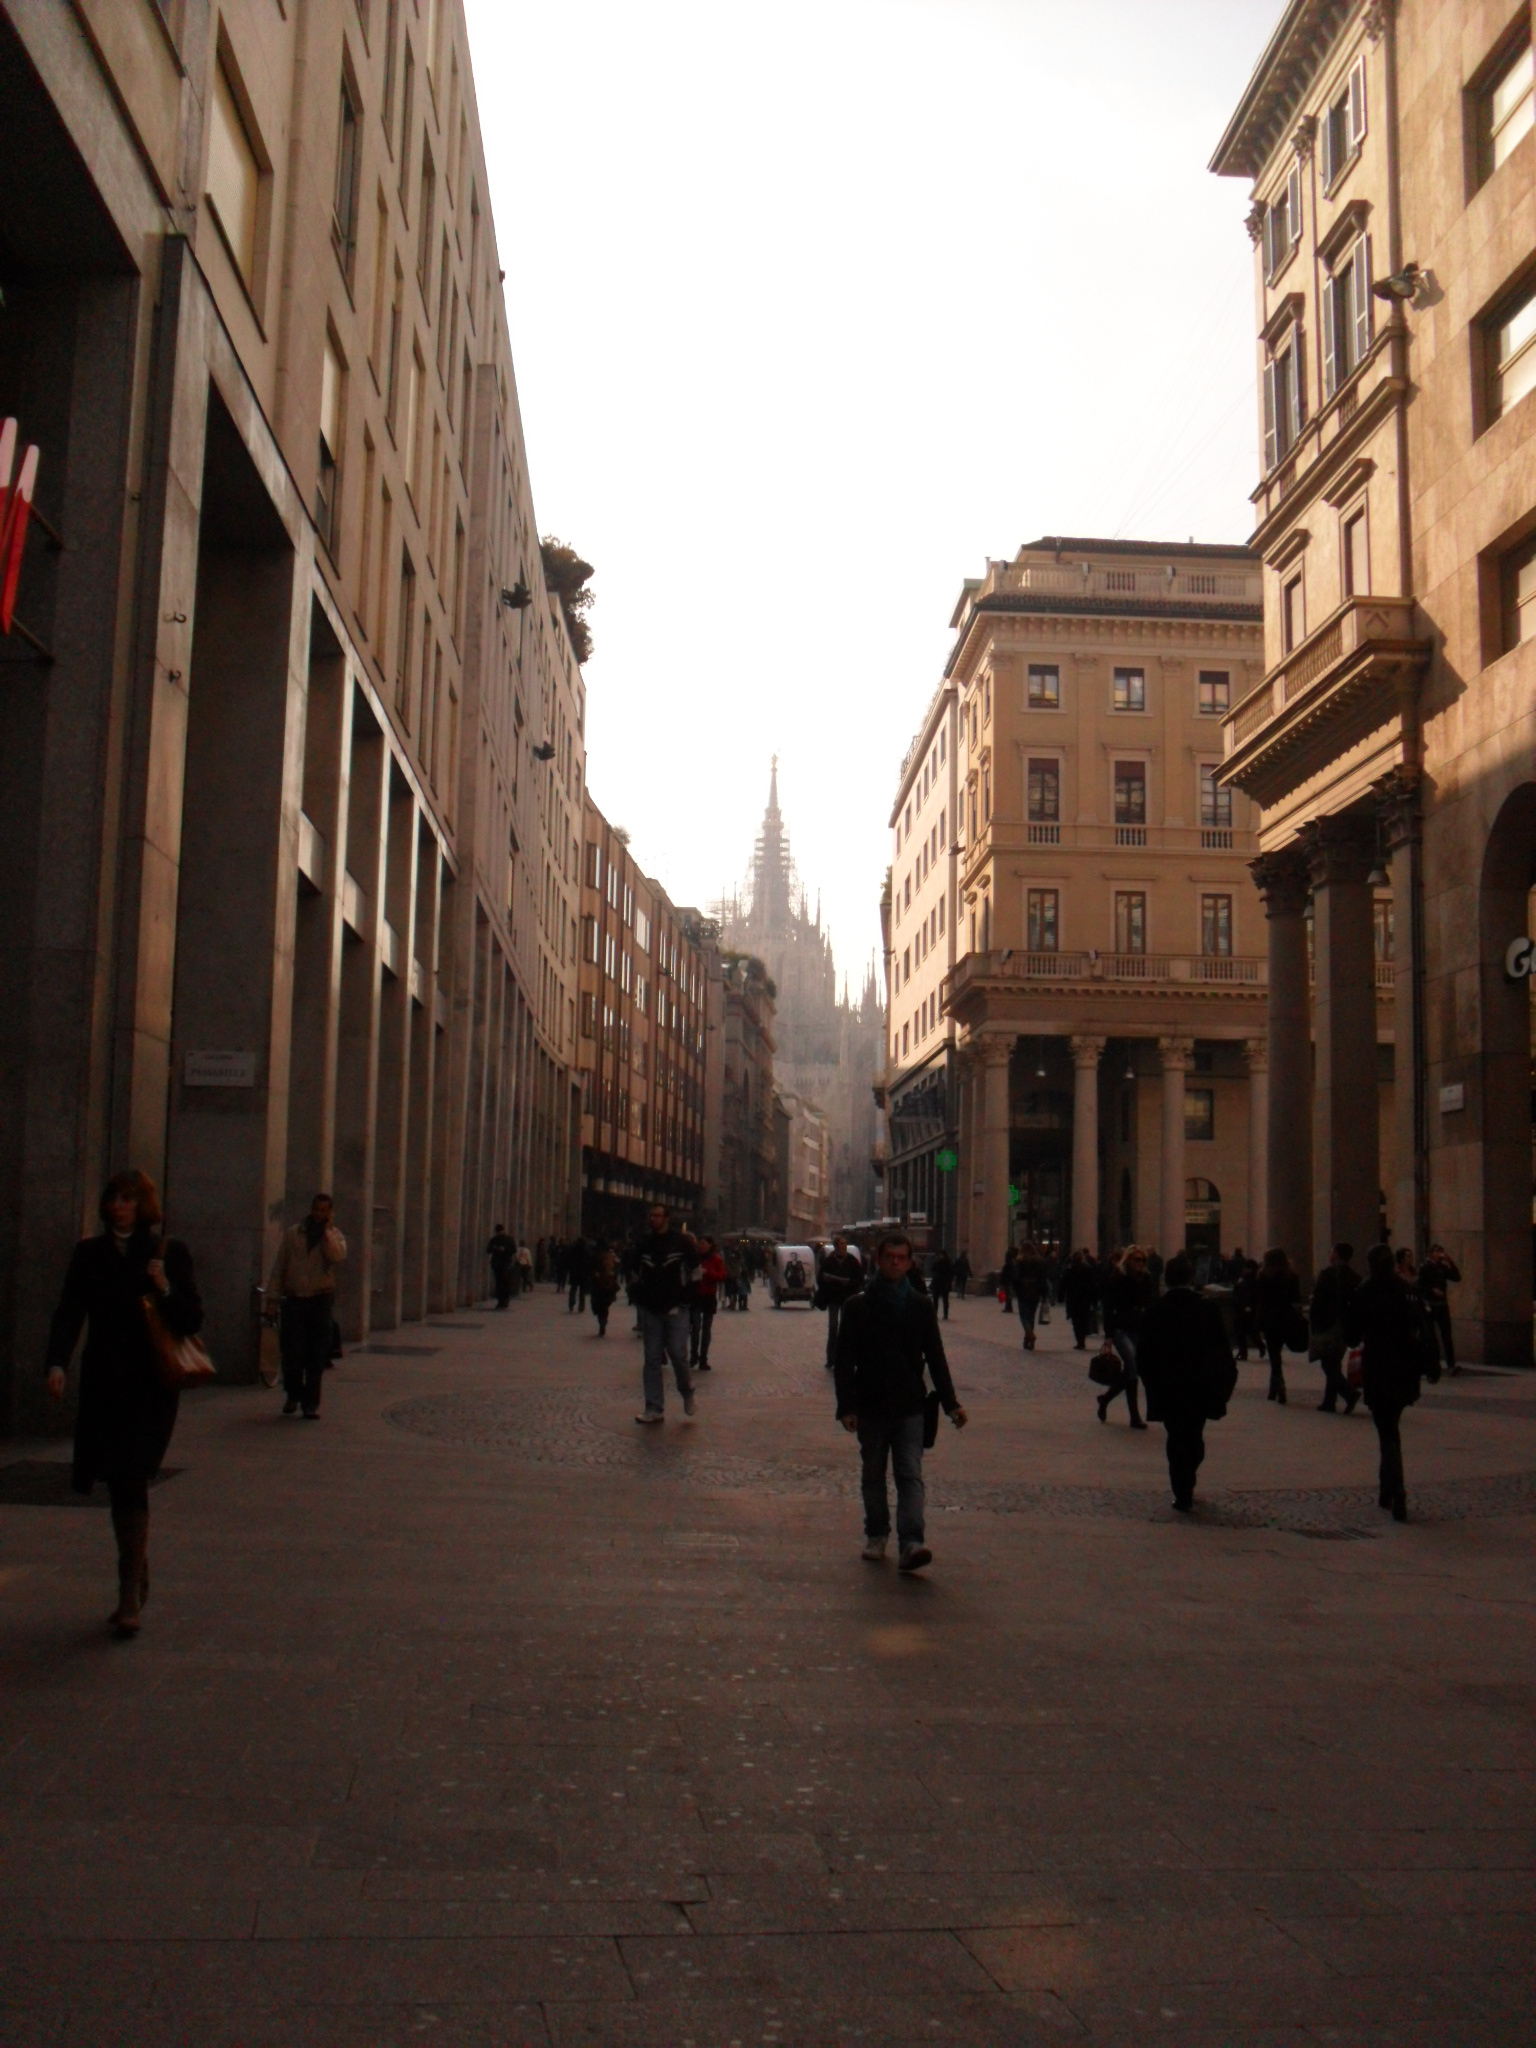 Duomo de Milão ao fundo